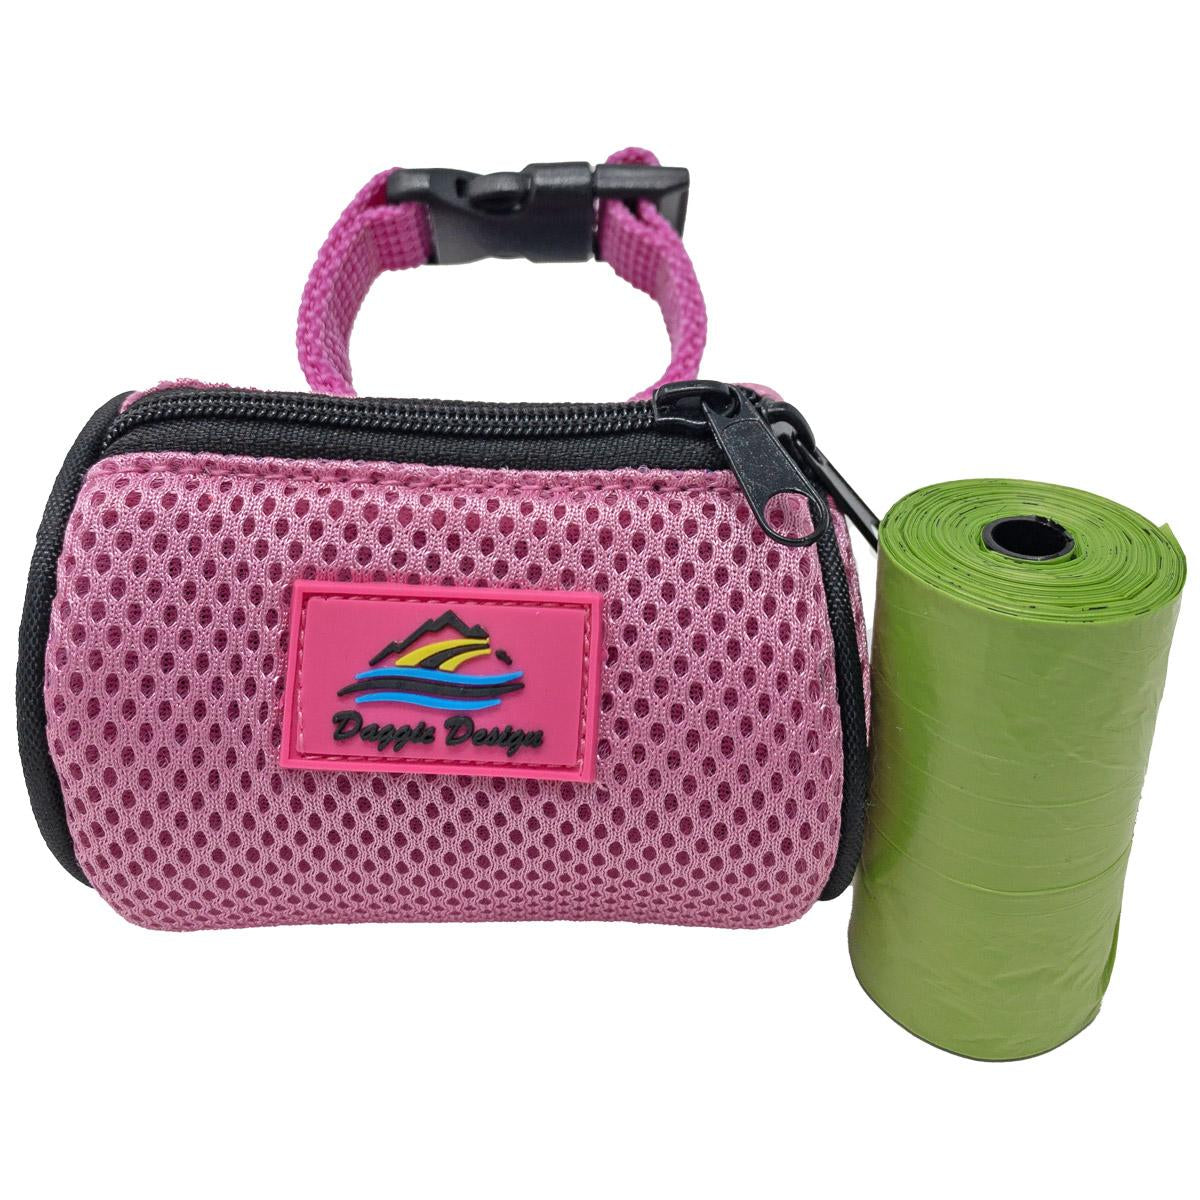 American River Poop Bag Holder - Candy Pink